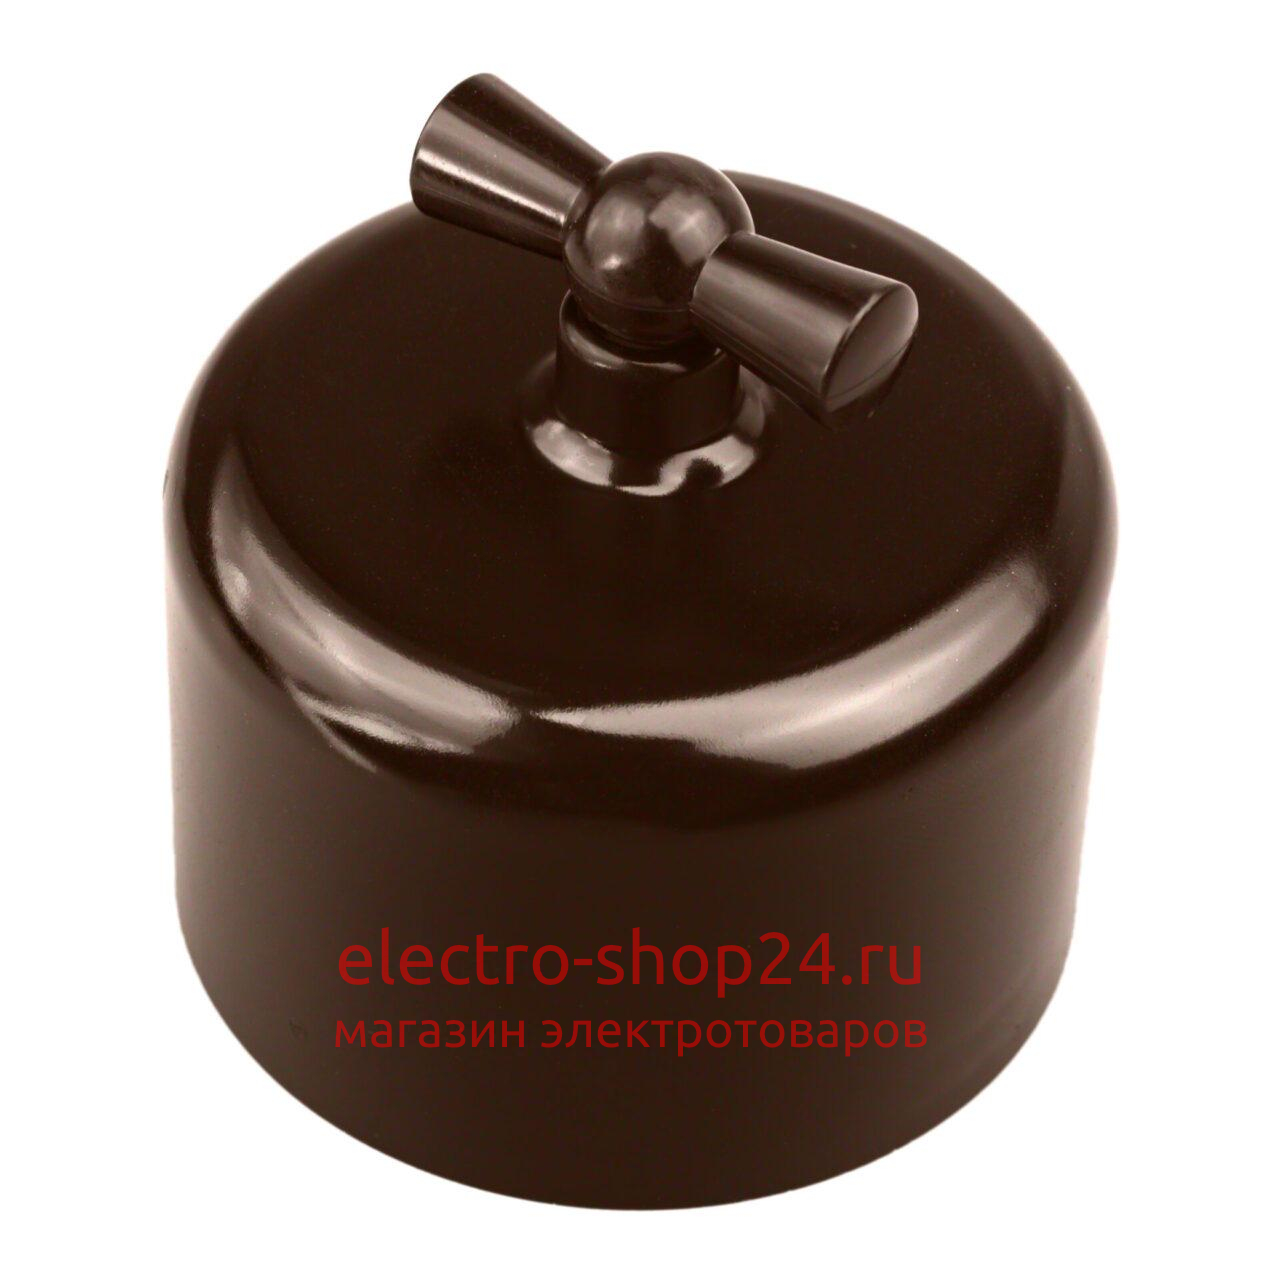 Переключатель 1-клавишный Bironi Ришелье пластик коричневый R1-211-22 R1-211-22 - магазин электротехники Electroshop